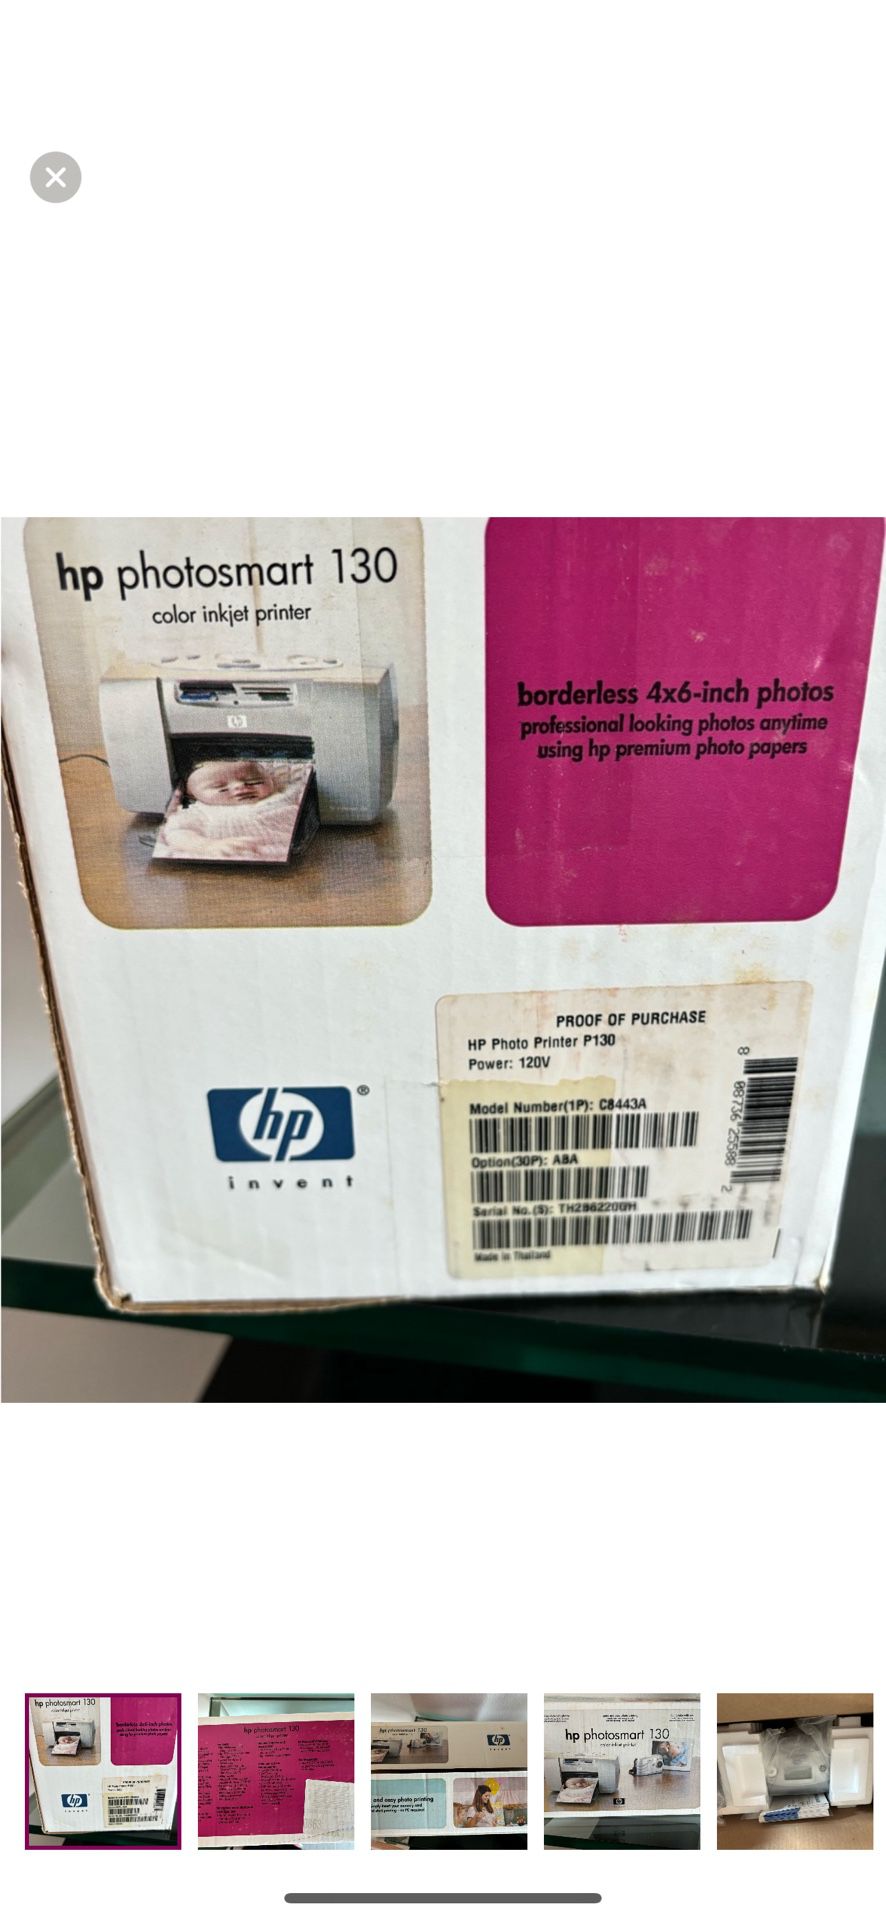 H P Photosmart Color, Ink, Jet Printer